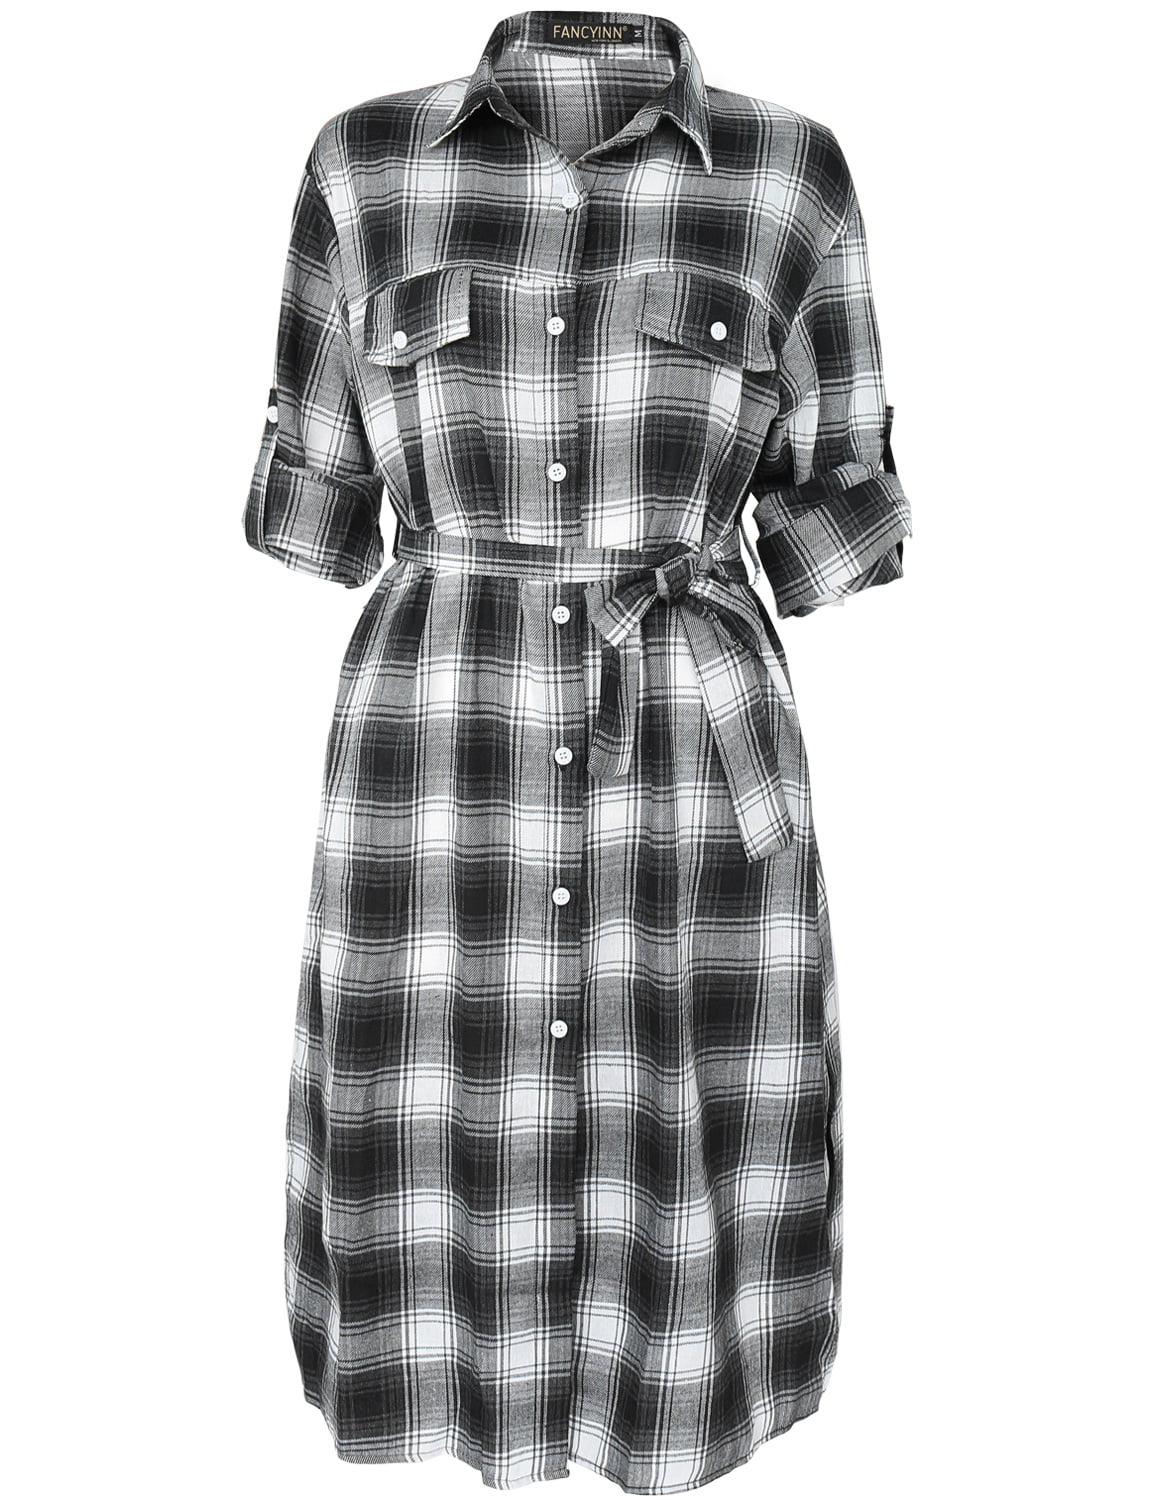 Long Checkered Plaid Belt with Down Dresses M Sleeve Shirt for FANCYINN Black Dress Button Women